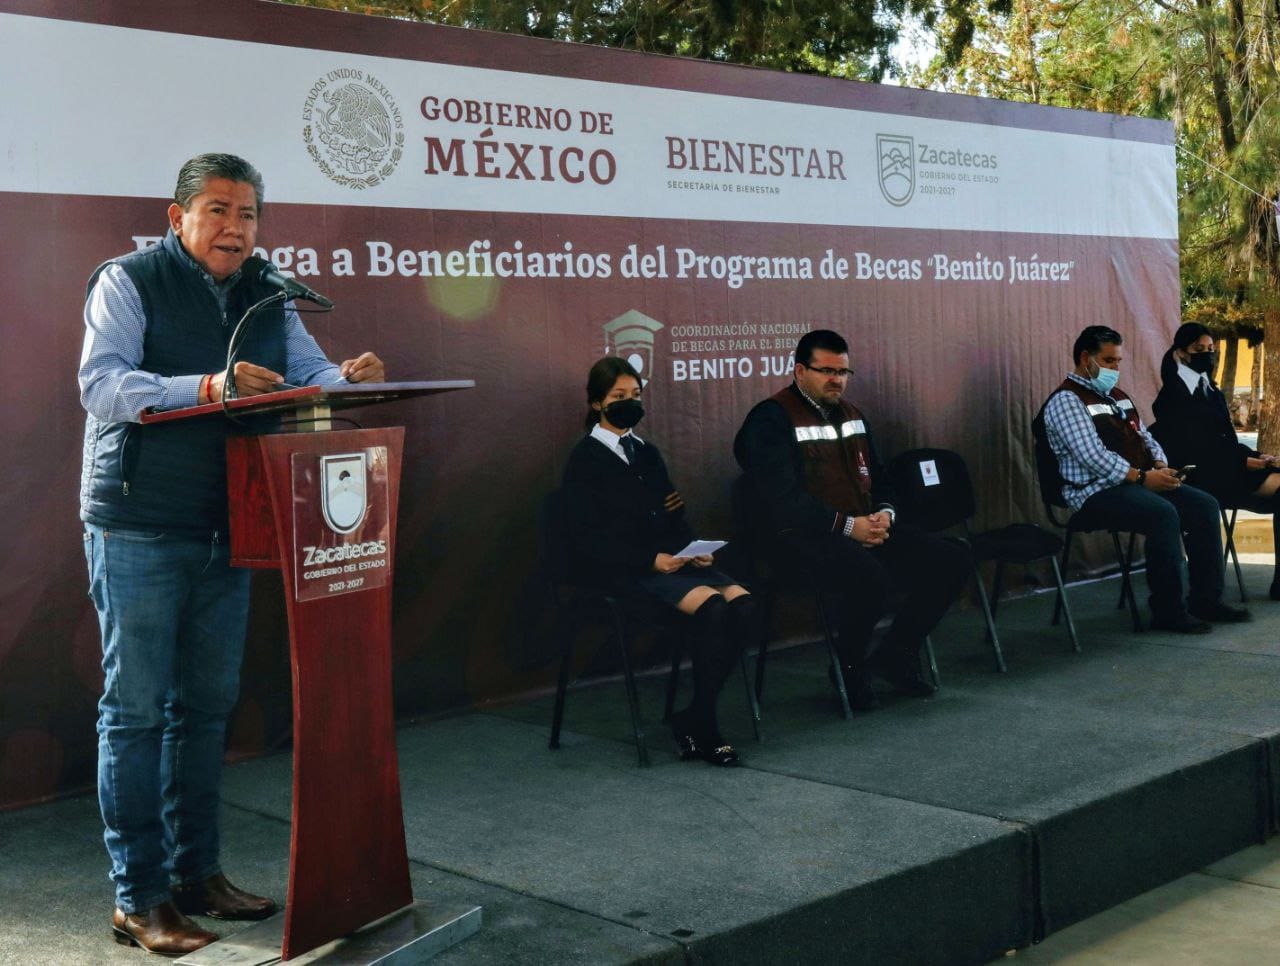 Al fortalecer la educación como instrumento para la transformación, Gobernador David Monreal y Gobierno de México entregan 563 becas en Pánfilo Natera
